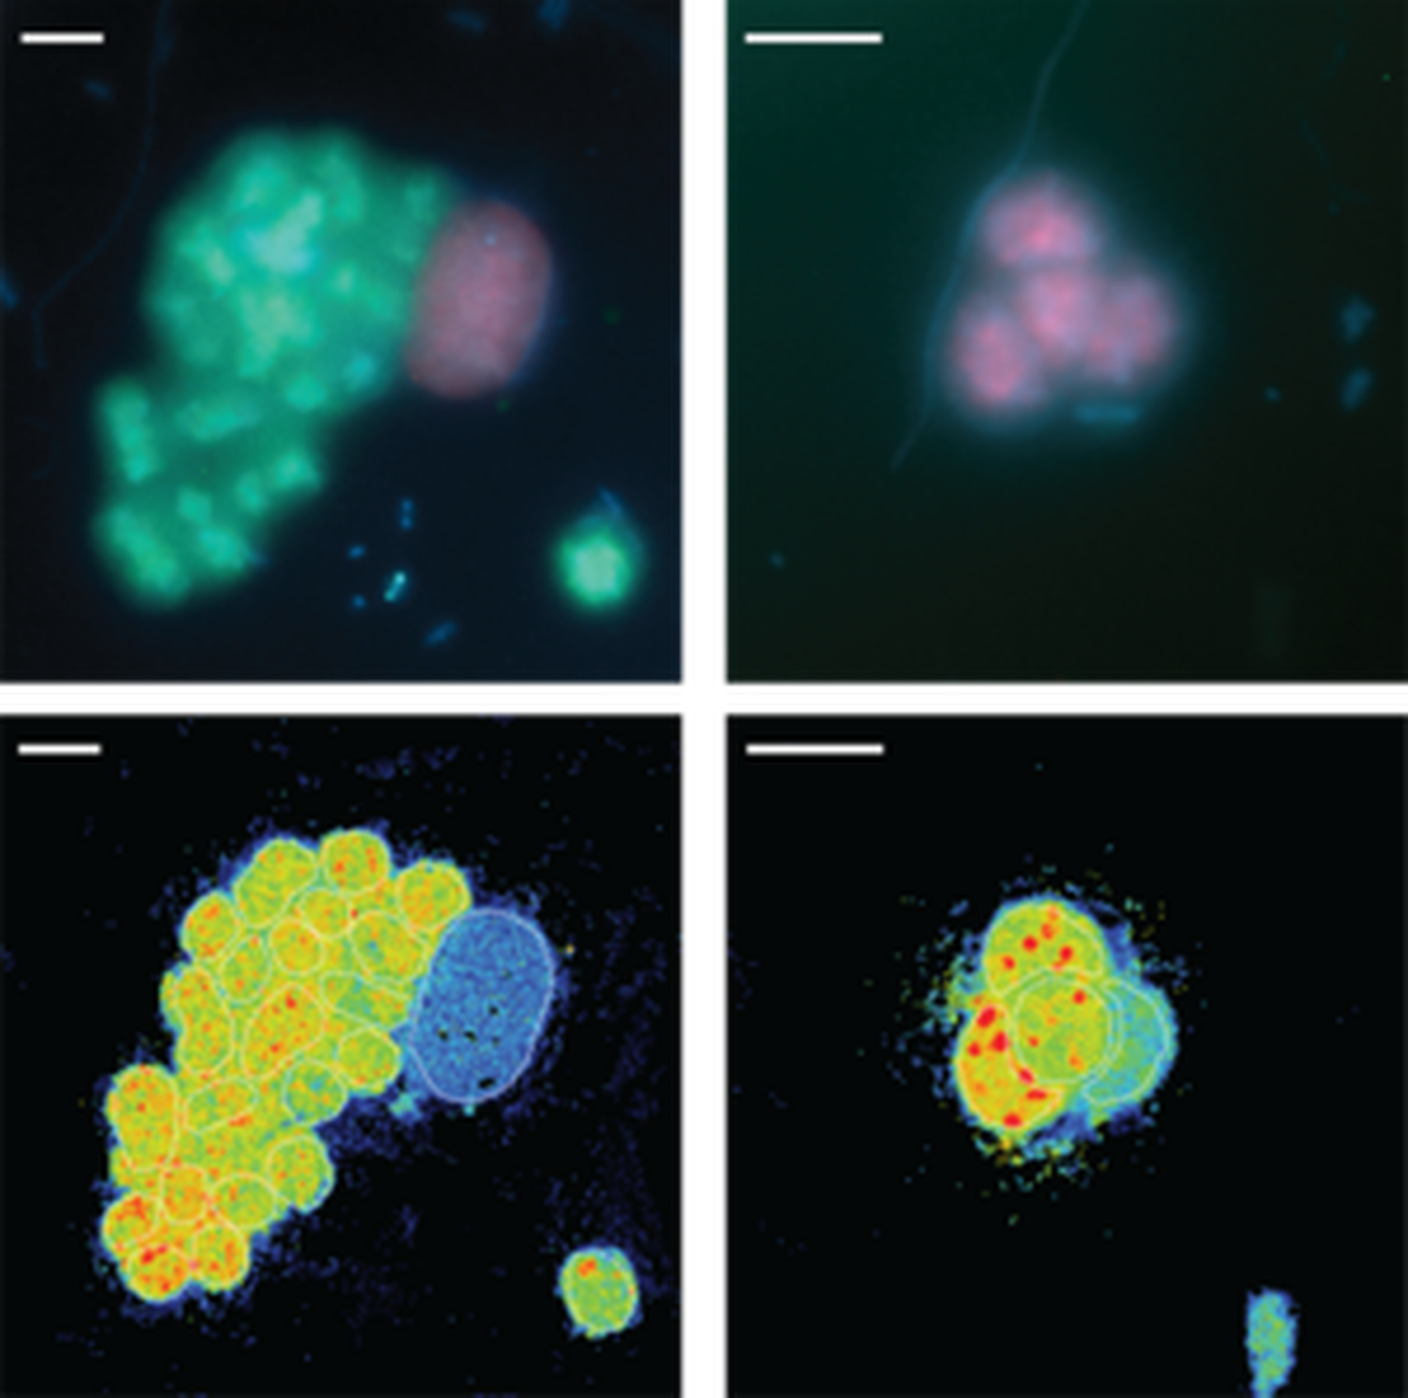 Fluorescenza di batteri di zolfo viola in acqua dolce del lago Cadagno (in verde e viola) e la loro fissazione dell'azoto monocellulare misurata da nanoSIMS (pannelli inferiori)